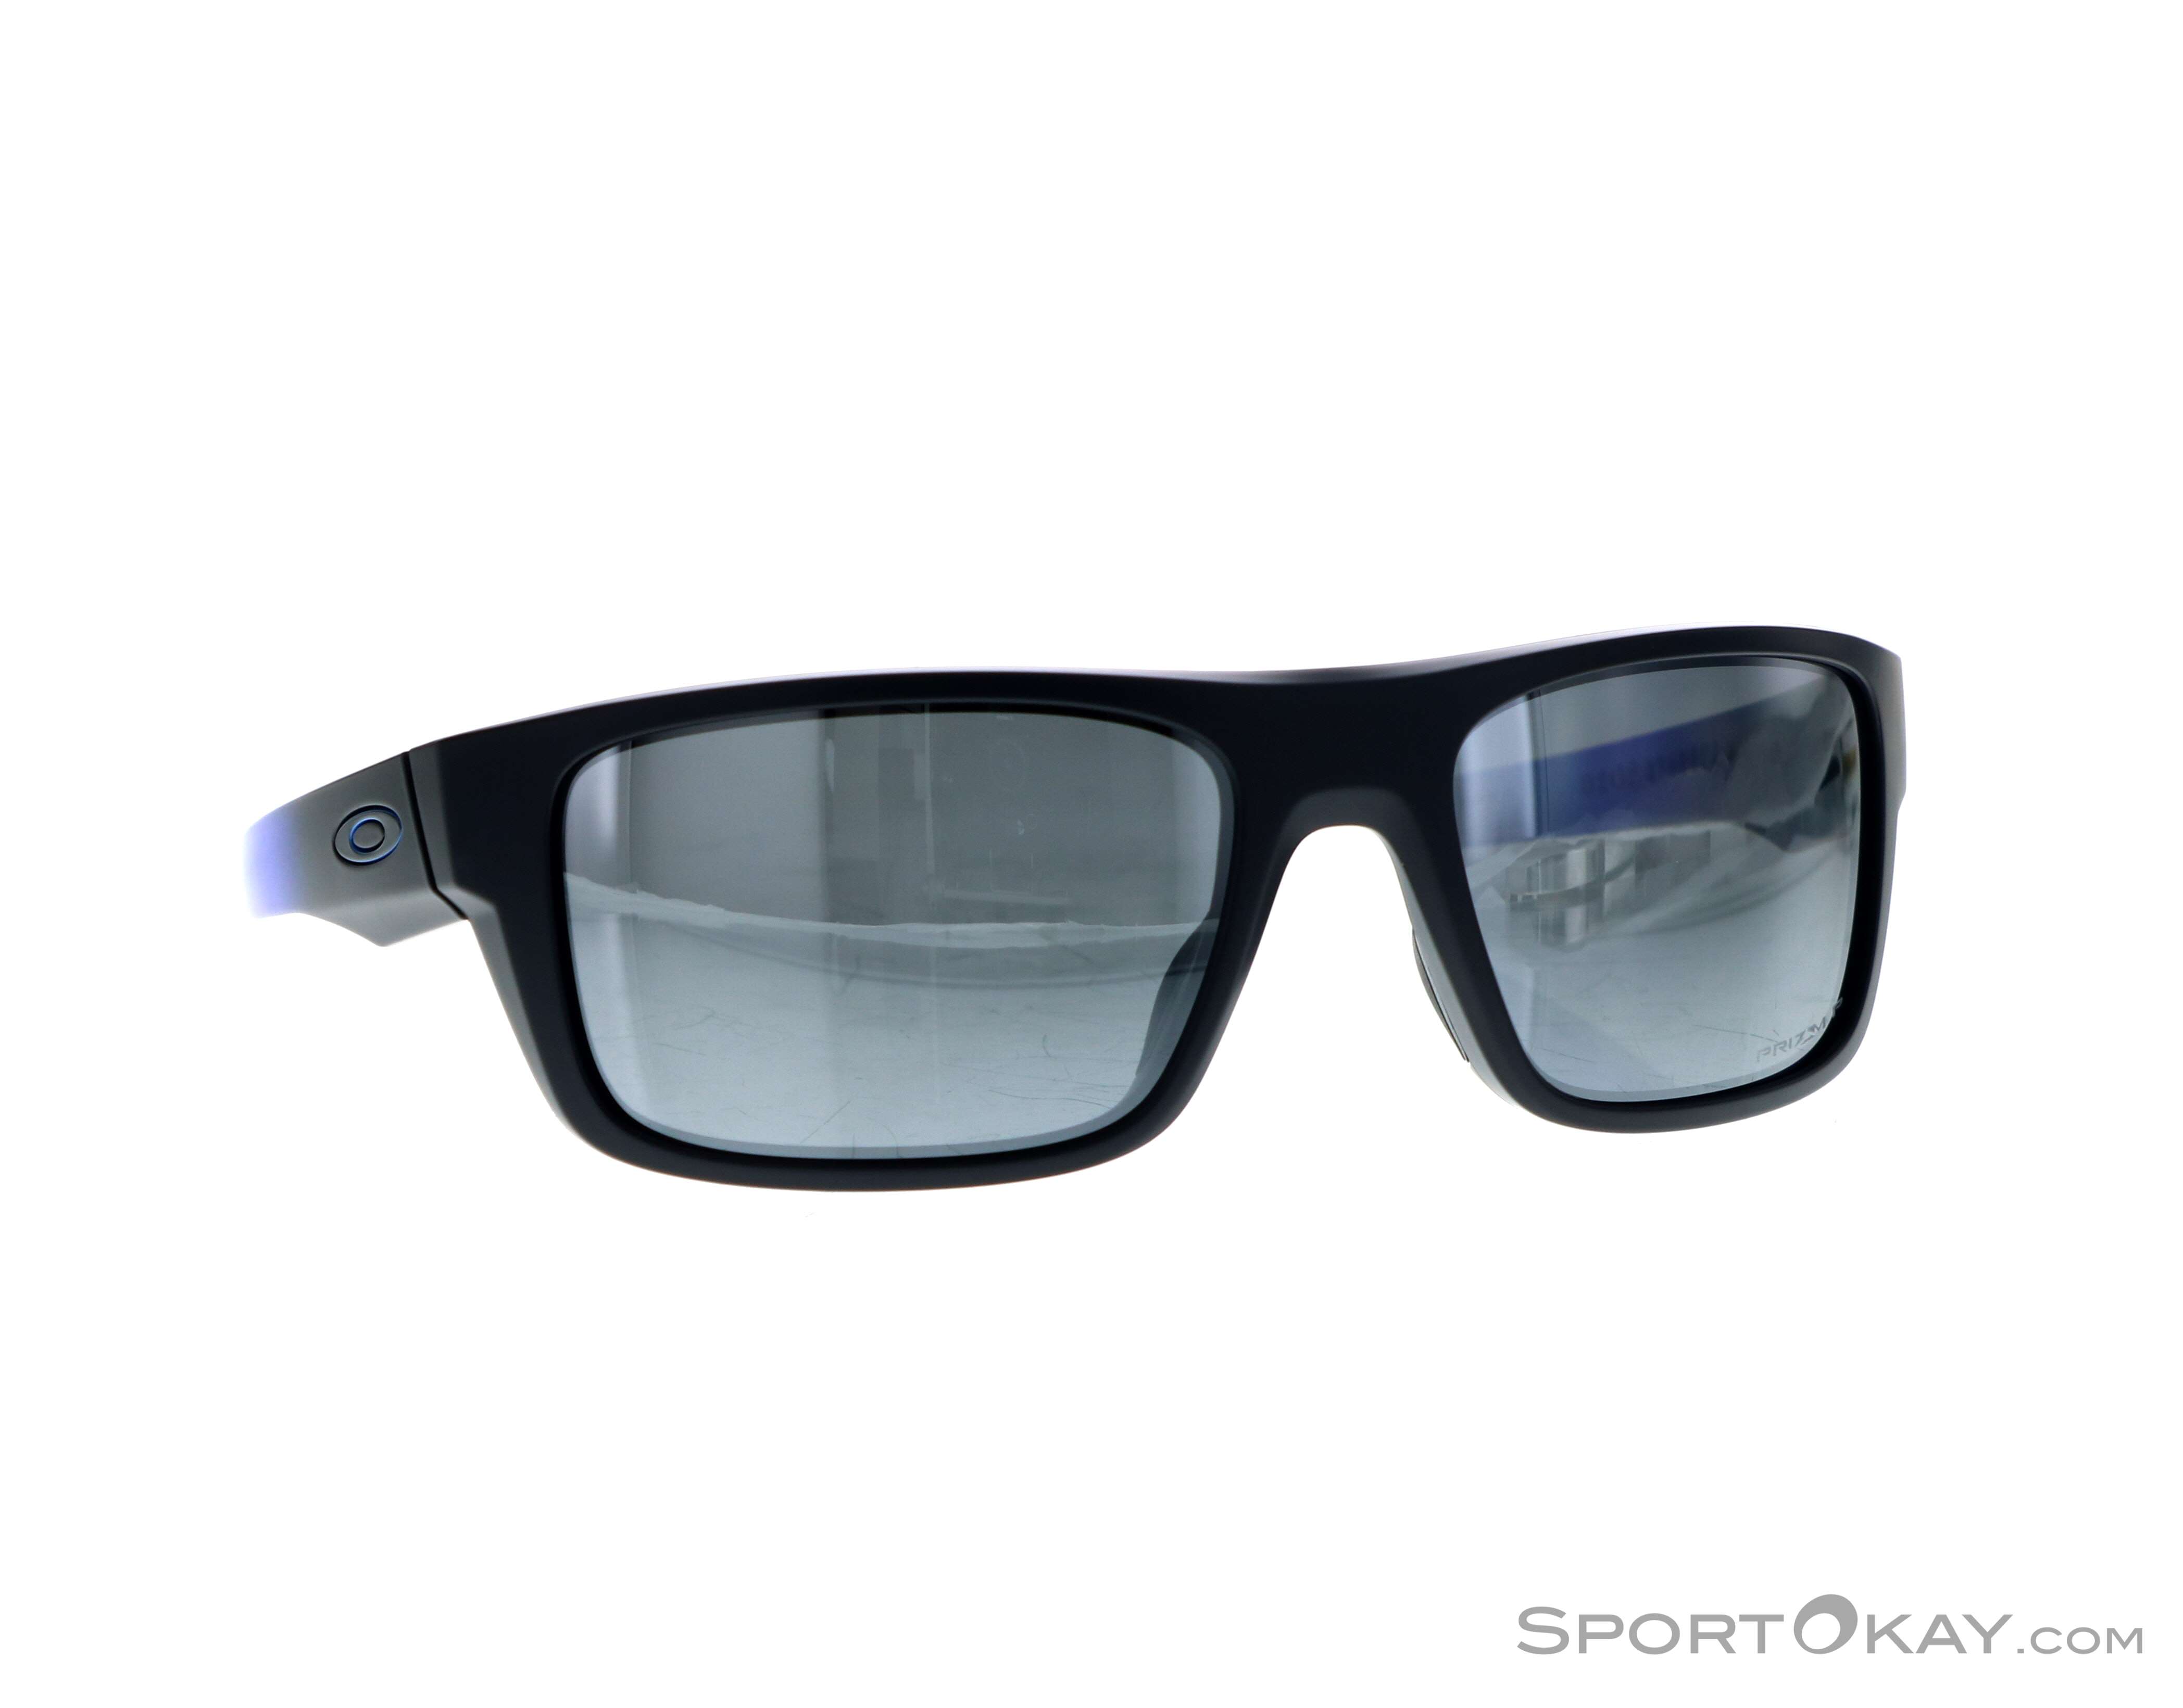 oakley men's drop point sunglasses